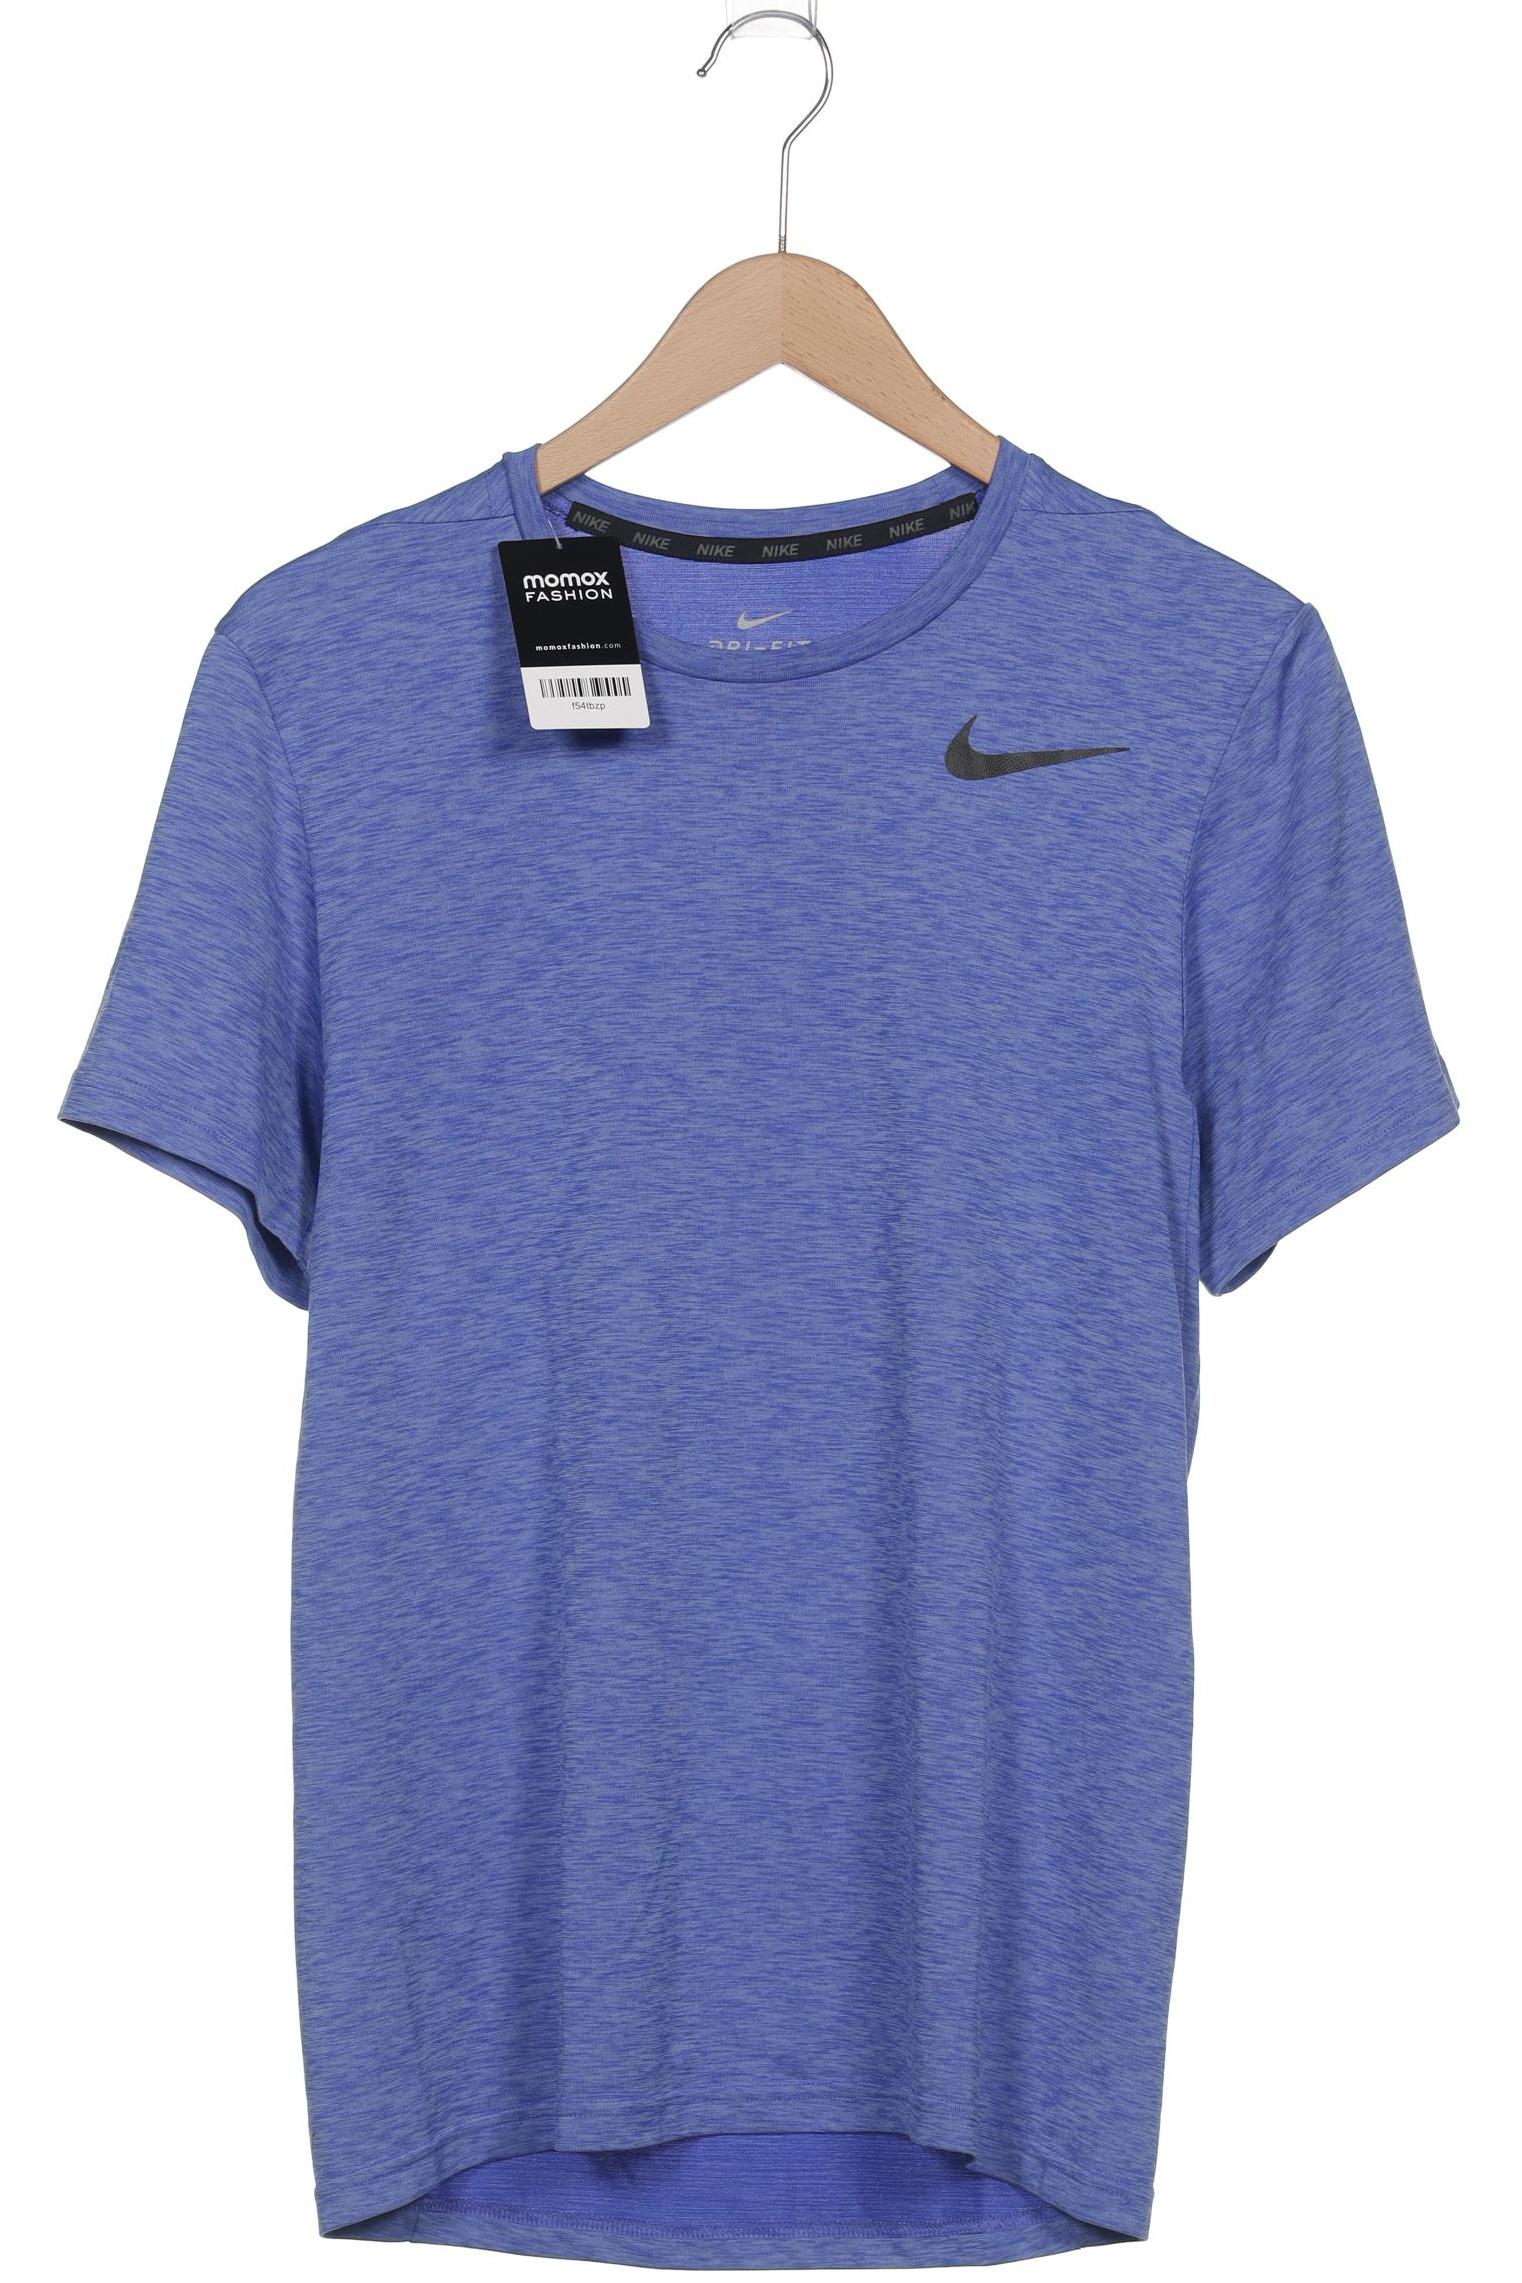 Nike Herren T-Shirt, blau, Gr. 46 von Nike